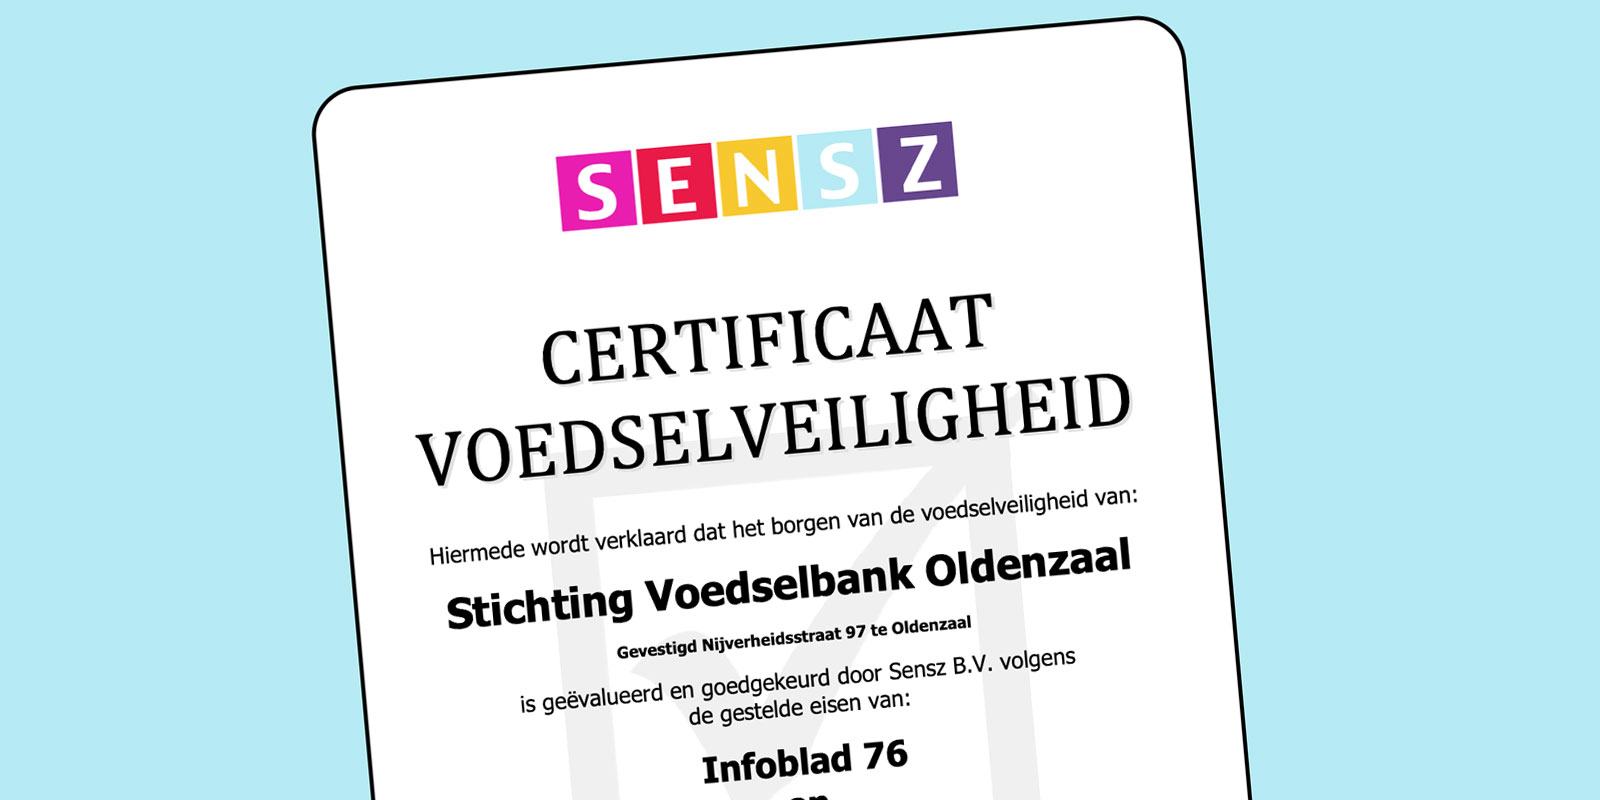 Voedselbank Twente Oost: Nieuws: Certificaat Voedselveiligheid Senz